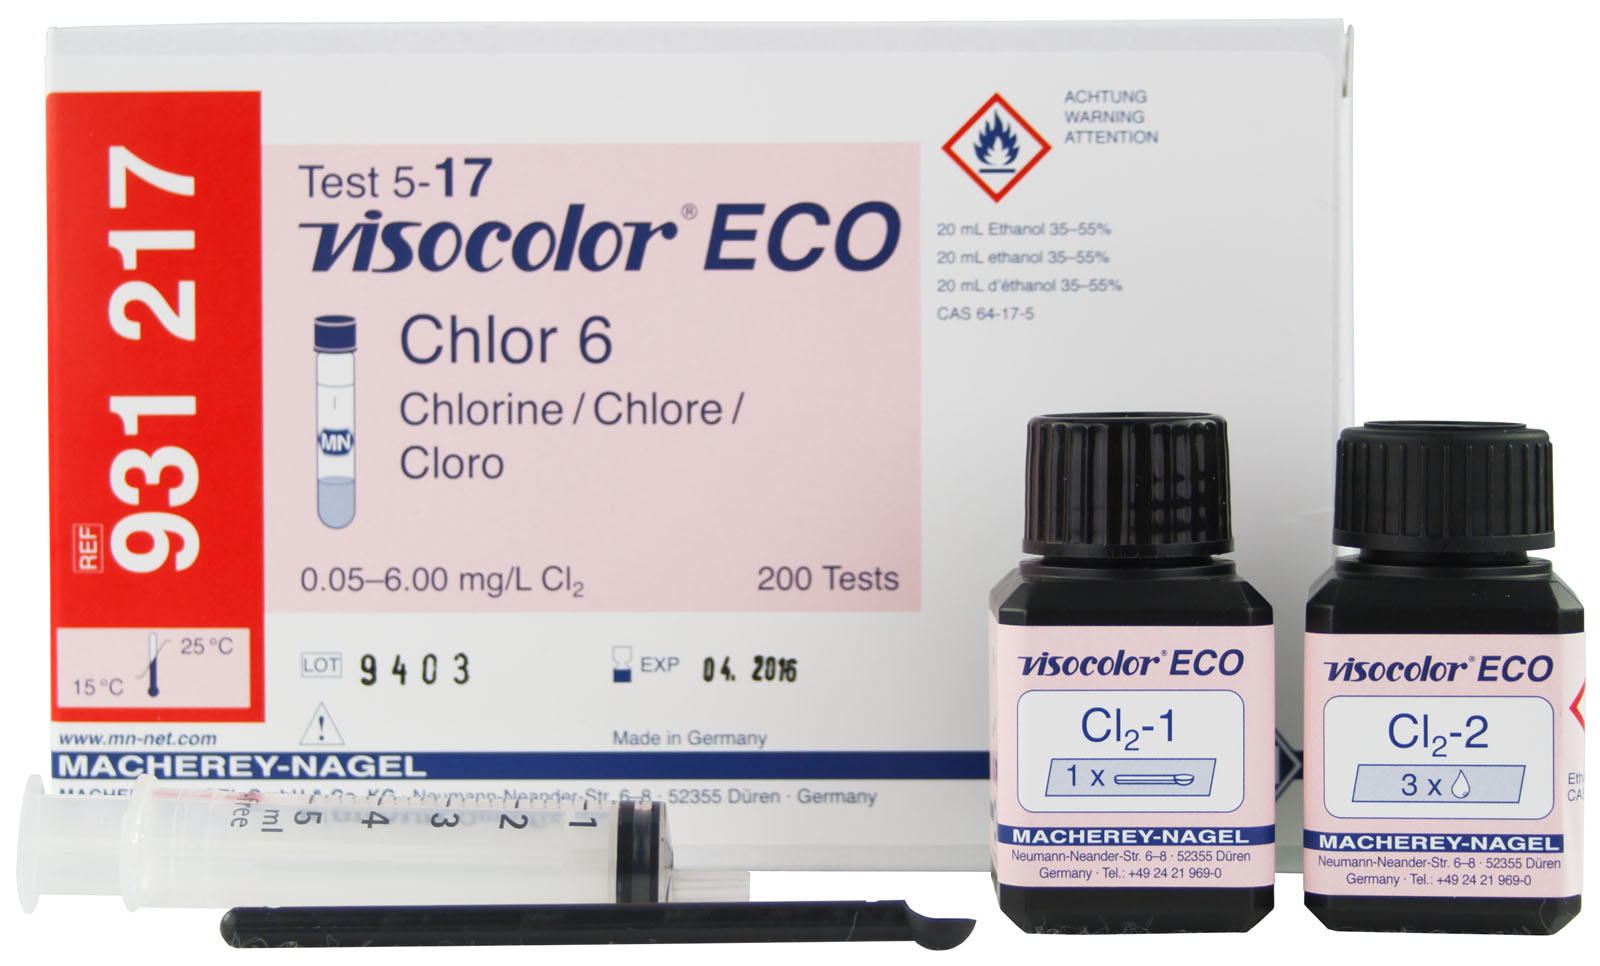 VISOCOLOR ECO Chlor 6, frei + gesamt